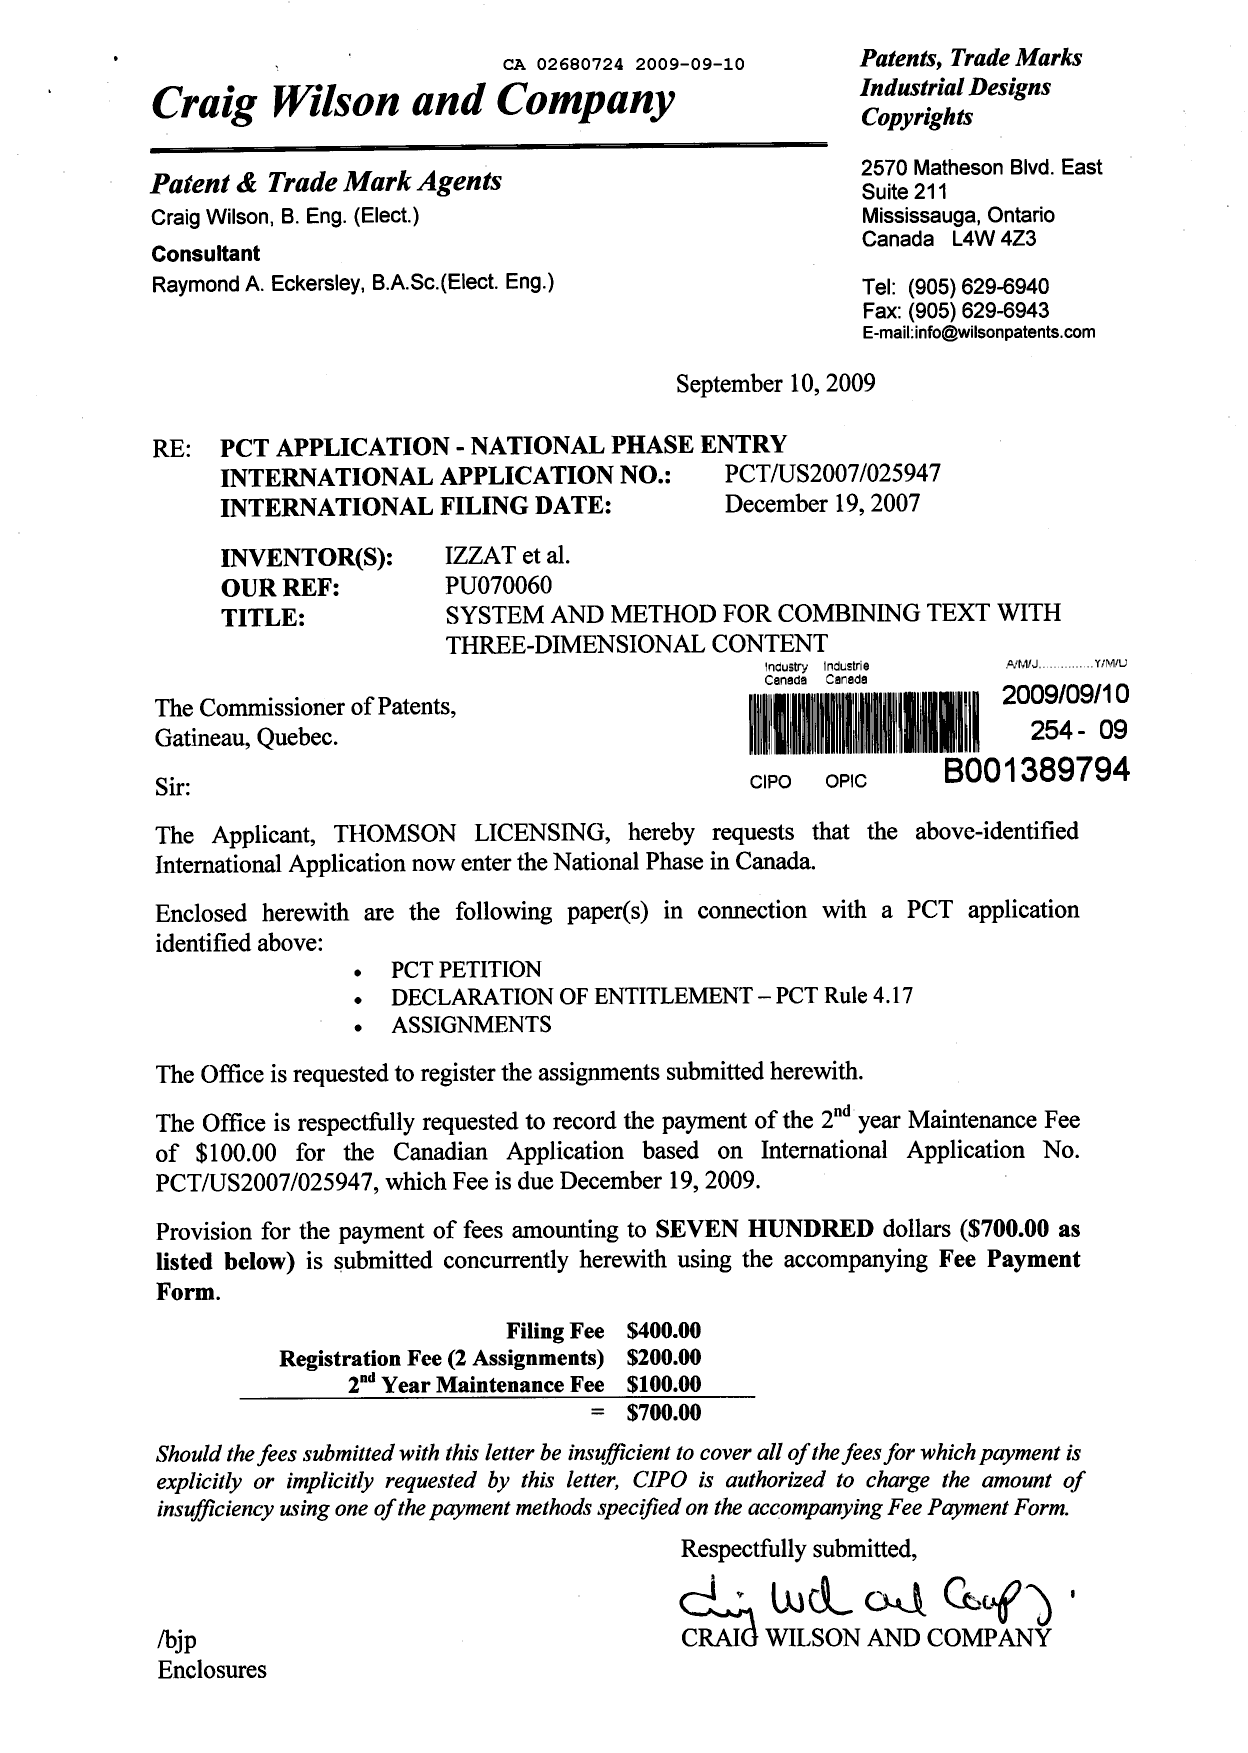 Document de brevet canadien 2680724. Cession 20090910. Image 1 de 5